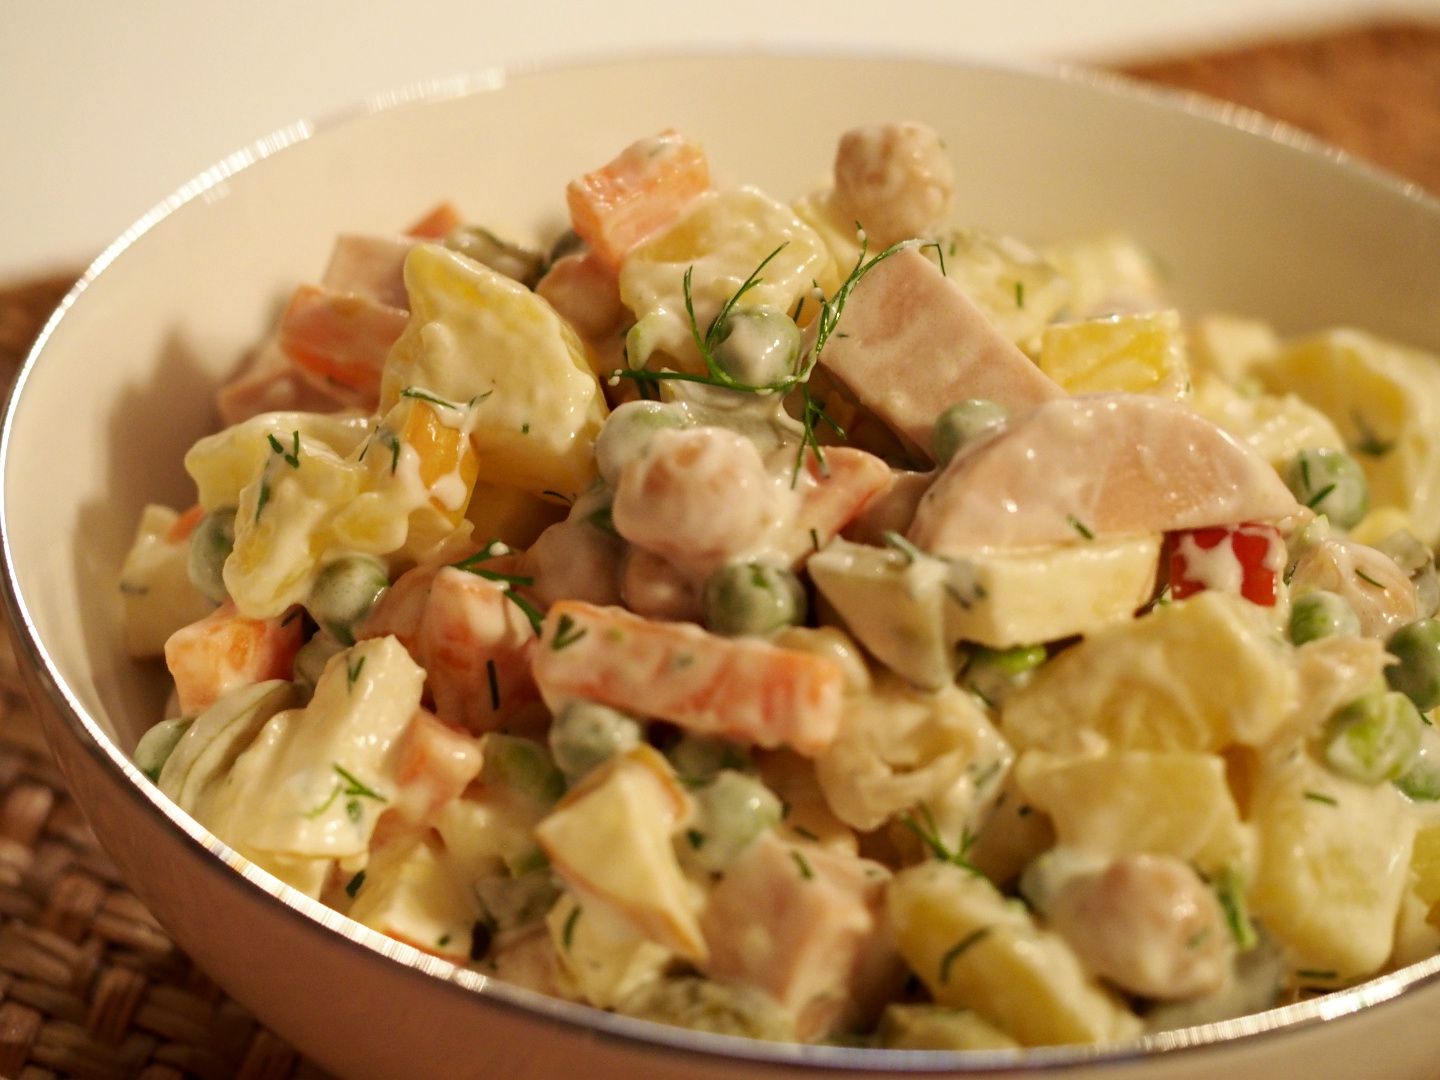 Eine Schüssel mit einem reichhaltigem Salat aus Kartoffeln, Karotten, Erbsen, Kichererbsen, veganer Fleischwurst und sauren Gurken.